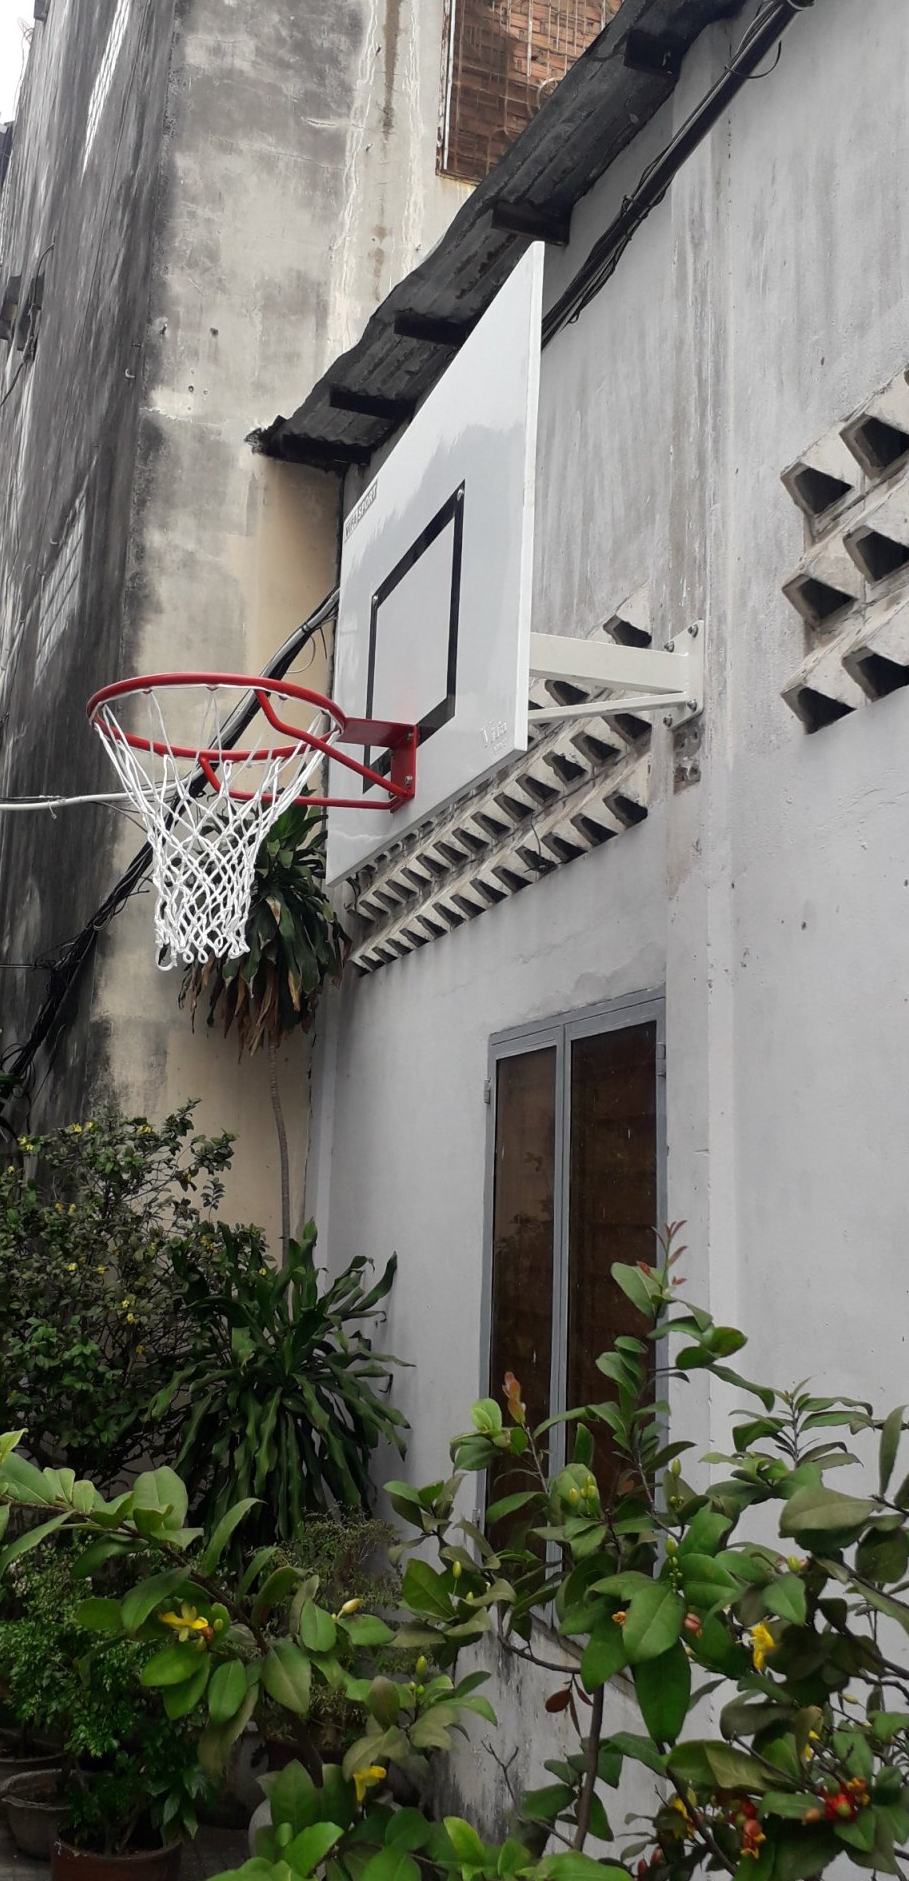 Mua bảng bóng rổ gắn tường giúp tiết kiệm nhiều chi phí